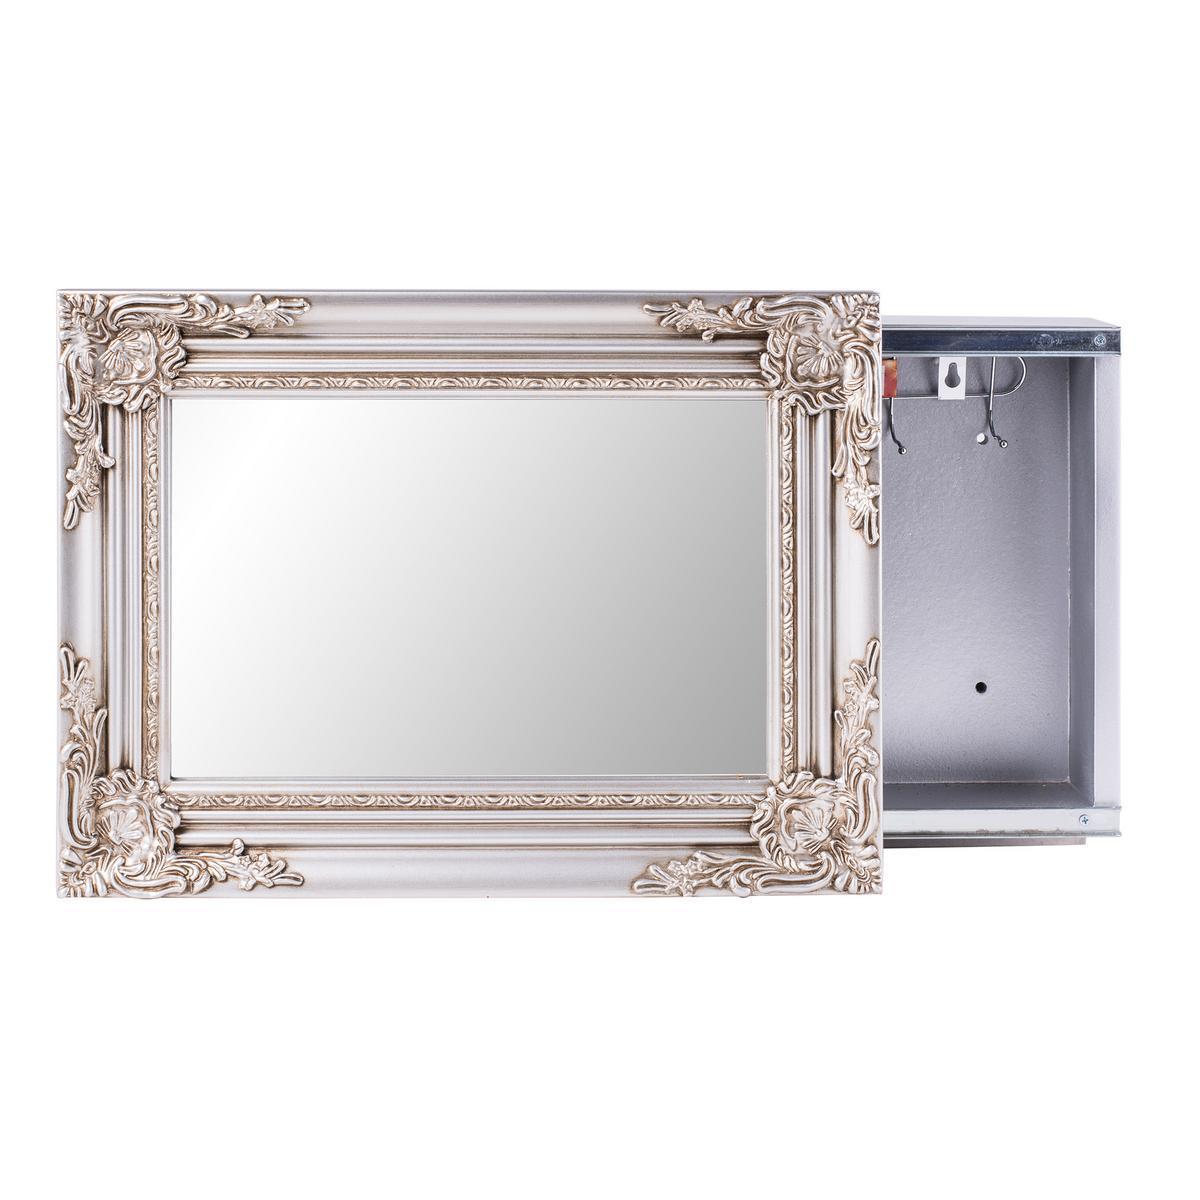 Armoire miroir - Paulownia et verre - 34 x 22 cm - Gris argent